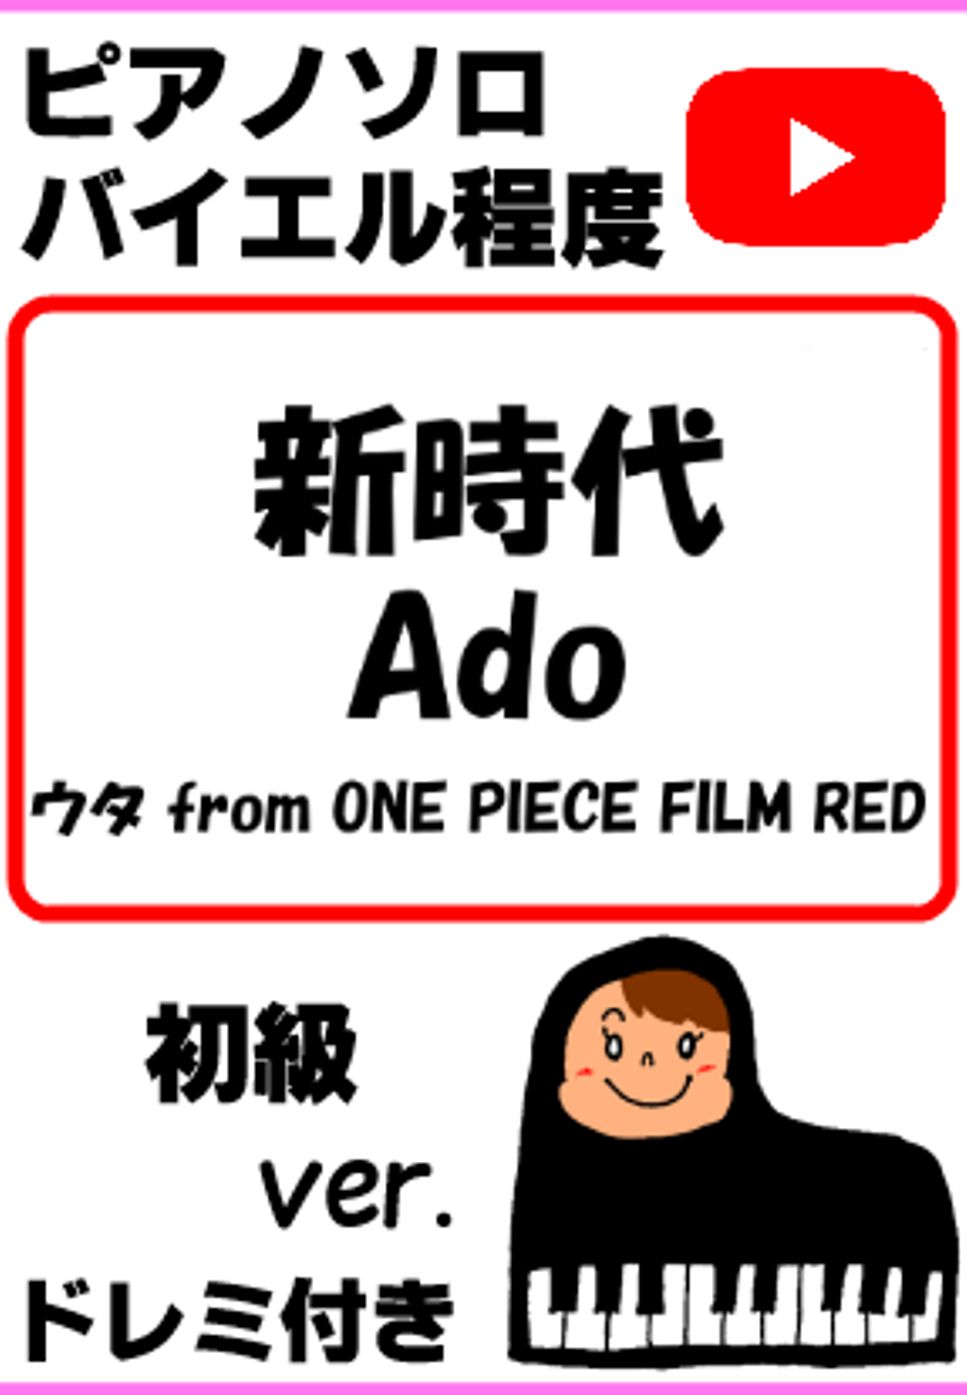 中田ヤスタカ - 新時代 Ado ウタ from ONE PIECE FILM RED 初級ver. (親子連弾/連弾/簡単ピアノ/白鍵ピアノ/演奏会/ドレミ付/楽譜/鍵盤/piano) by ラボのピアノ